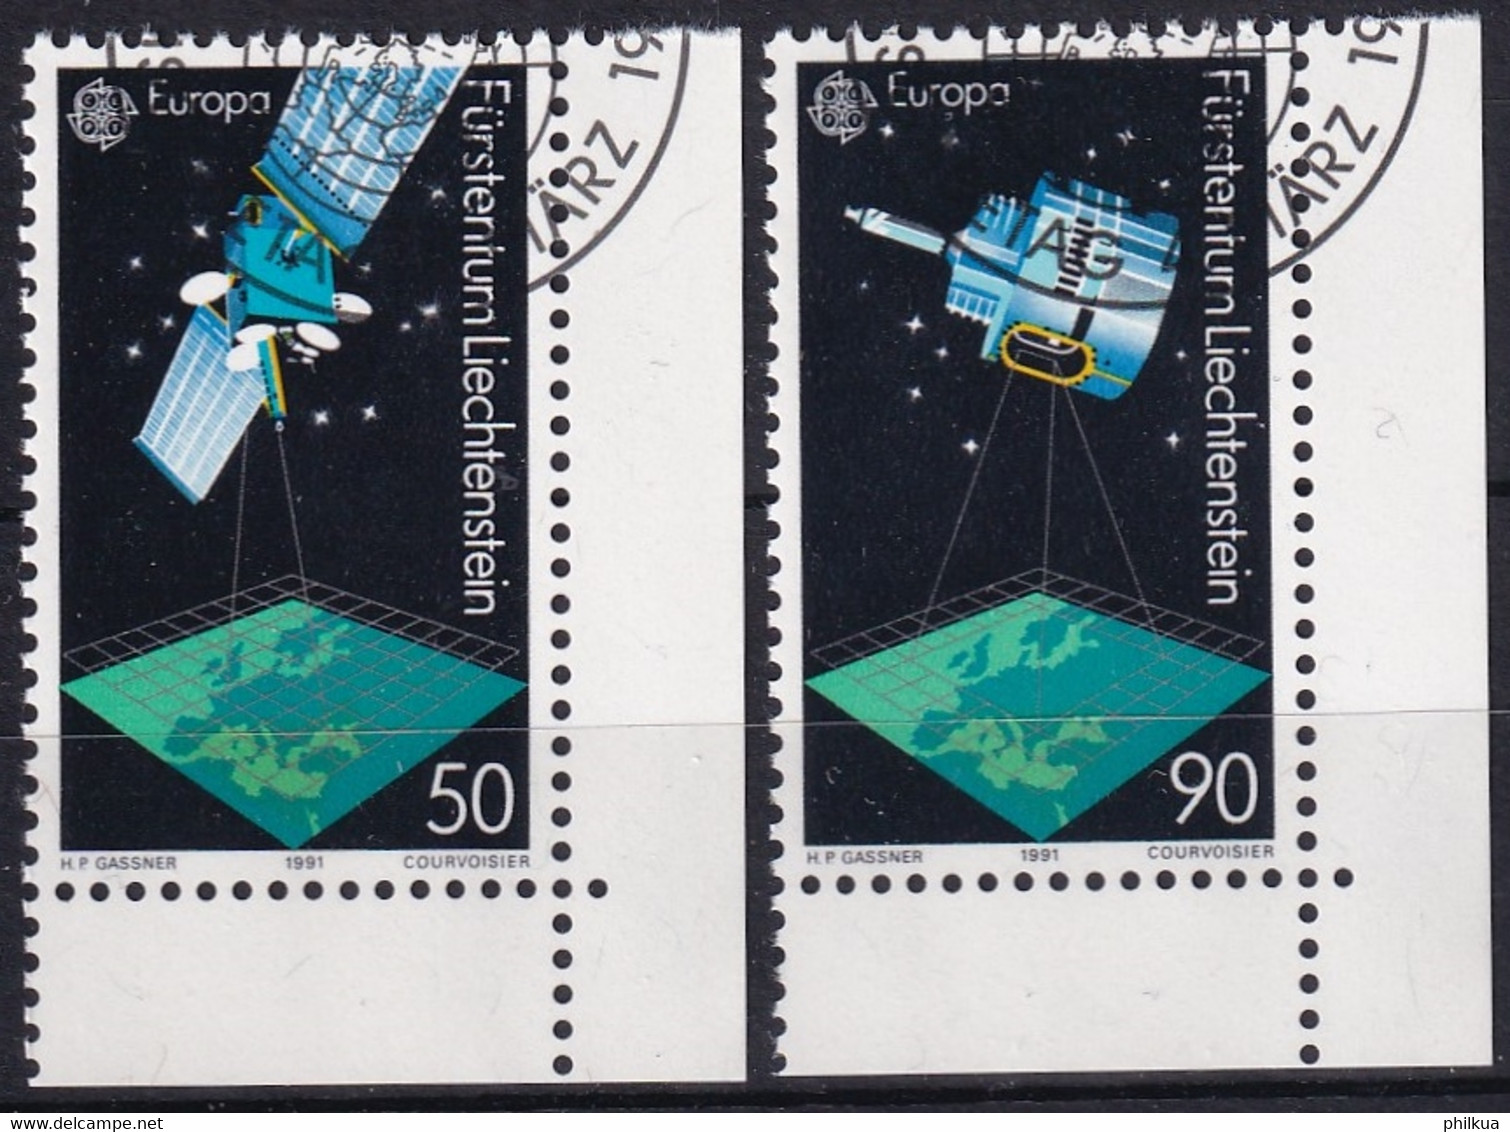 MiNr. 1011 - 1012  Liechtenstein1991, 4. März. Europa: Europäische Weltraumfahrt - Europe